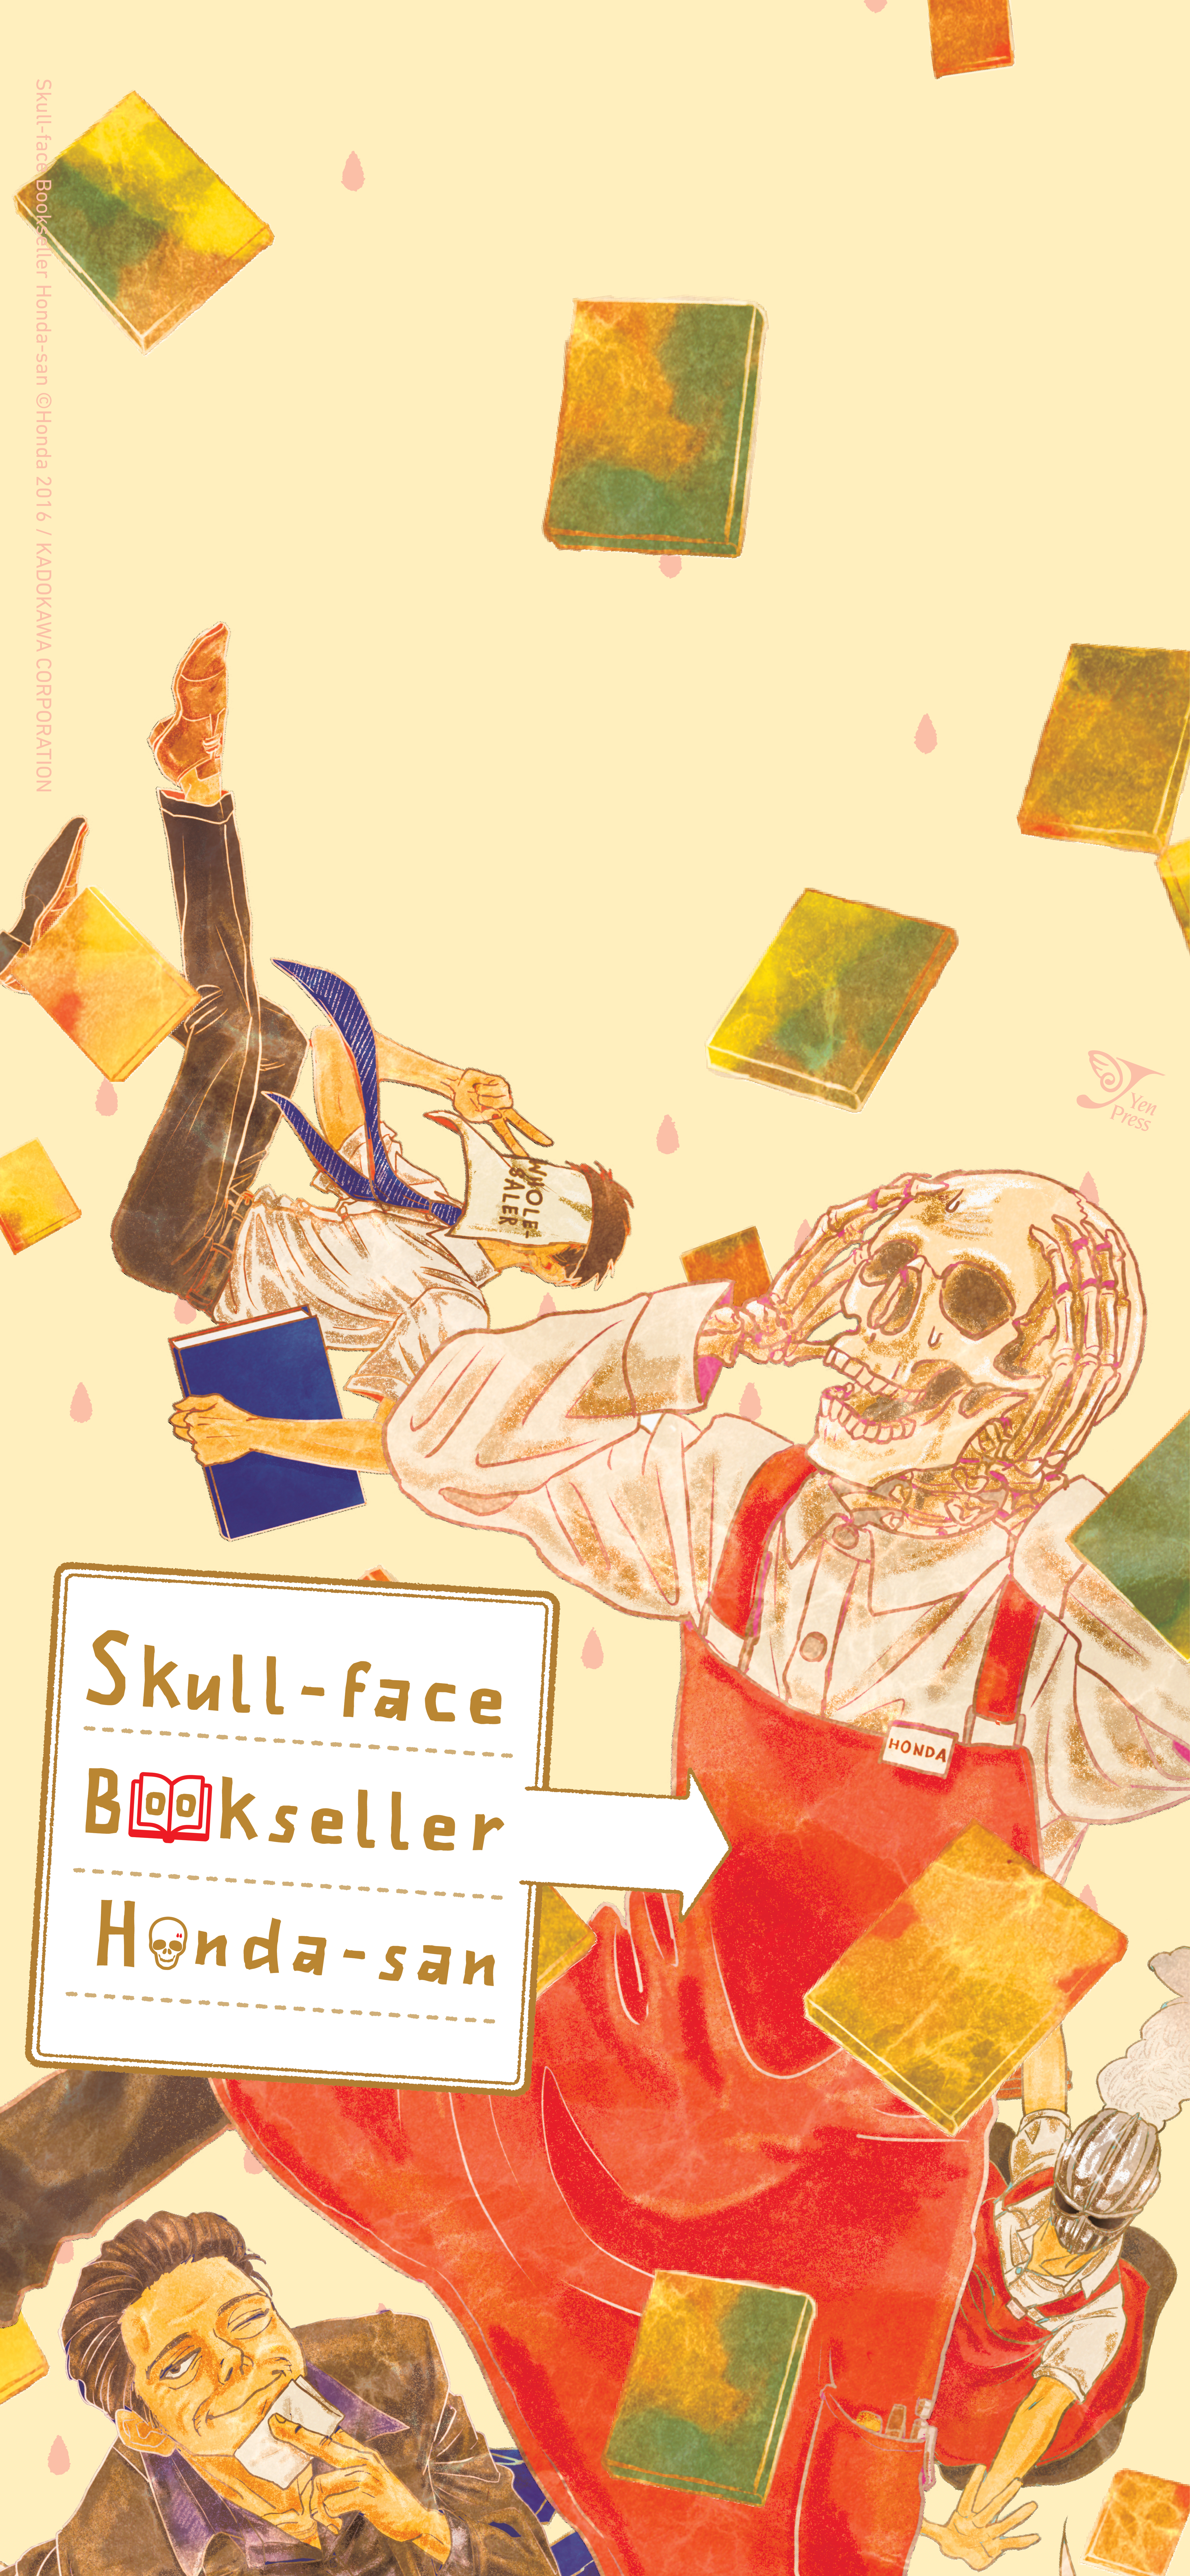 Skull-Face-Honda-san-v2_1125x2436_RV1